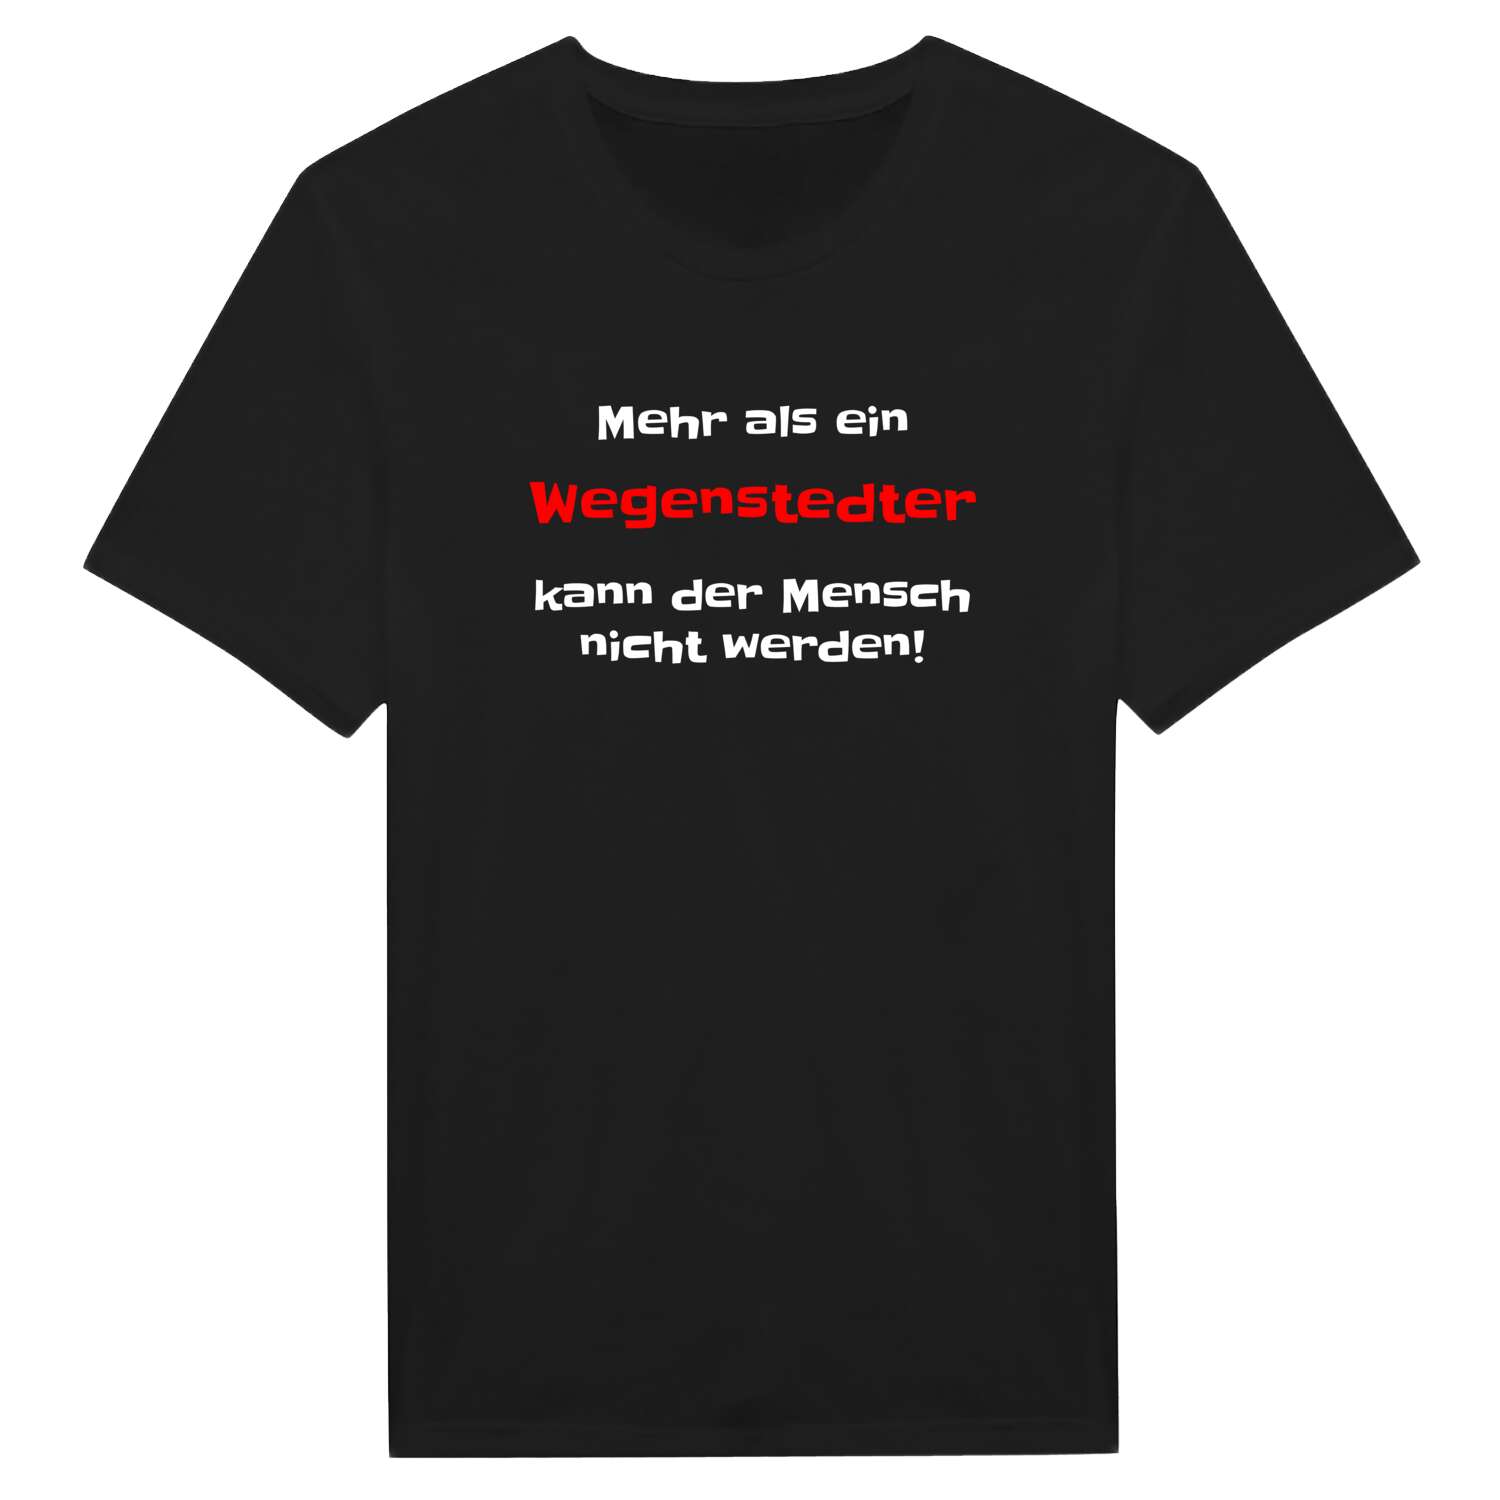 Wegenstedt T-Shirt »Mehr als ein«